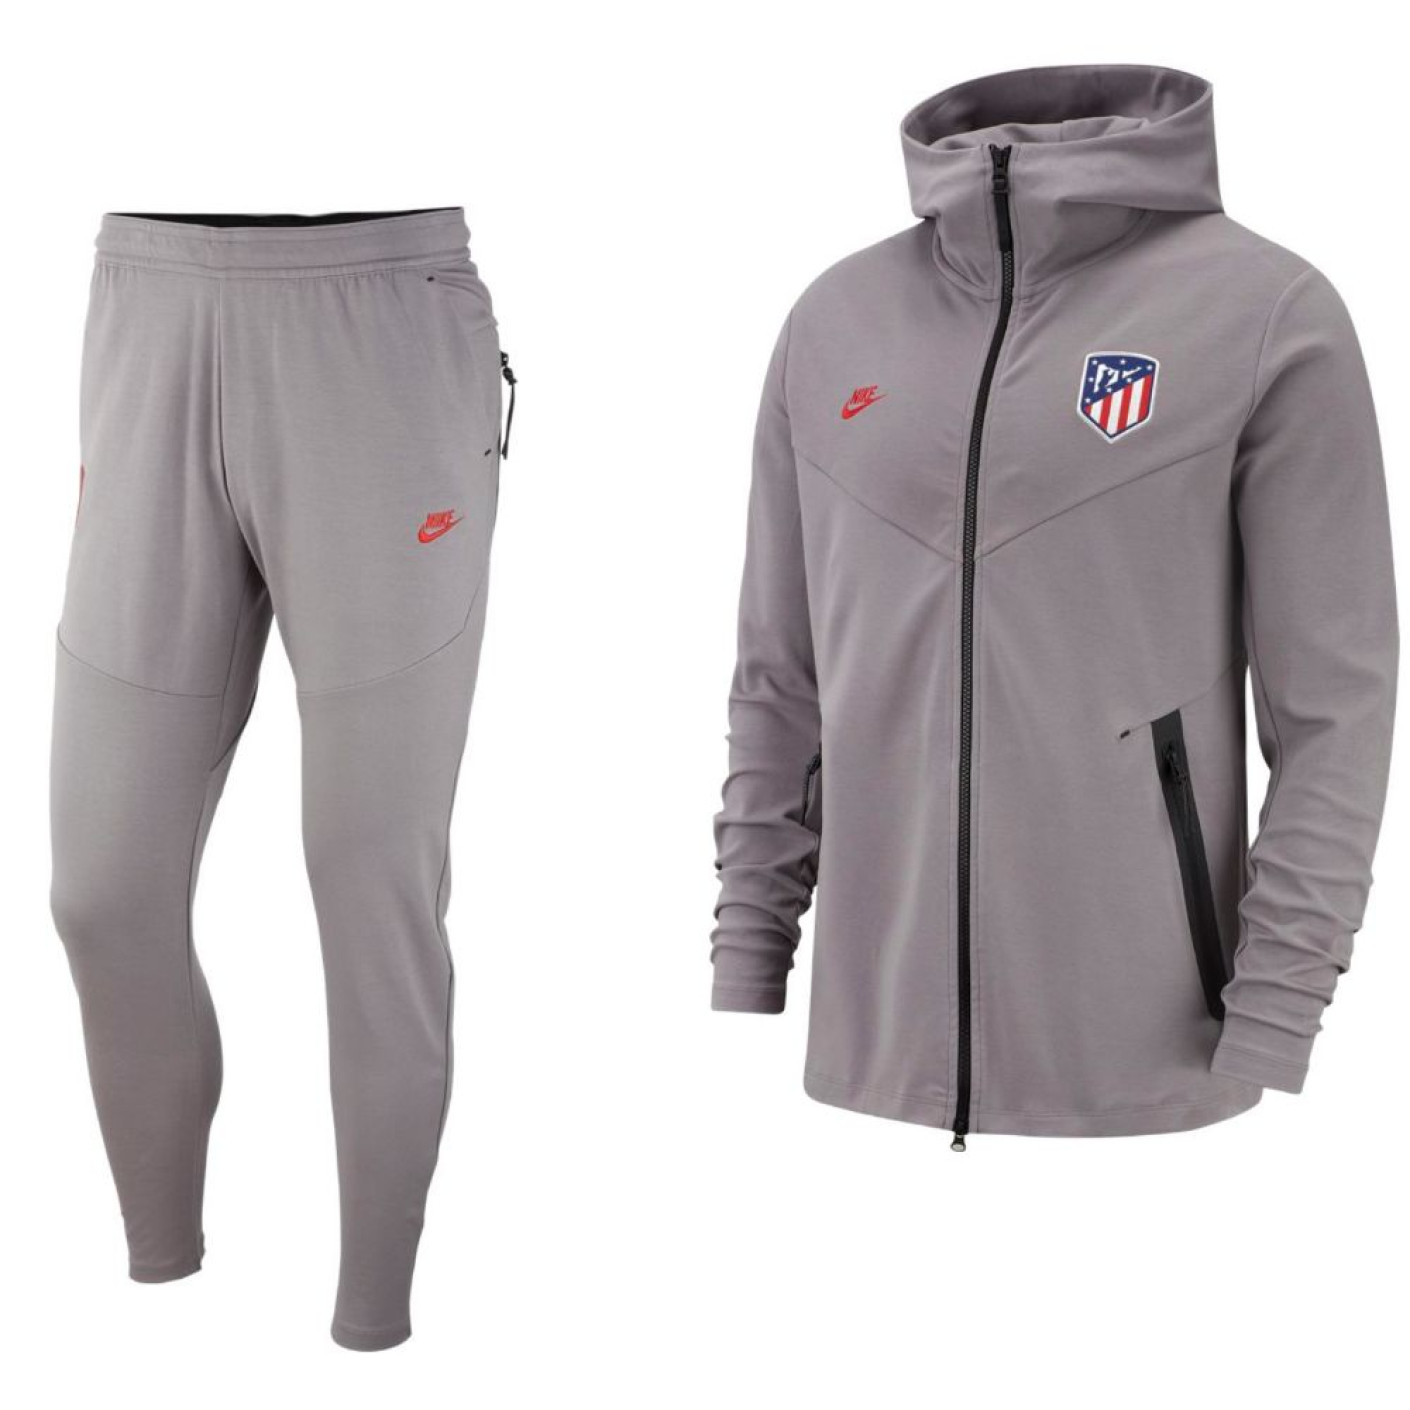 Nike Atletico Madrid Tech Fleece Pack Trainingspak 2019-2020 Grijs Zwart